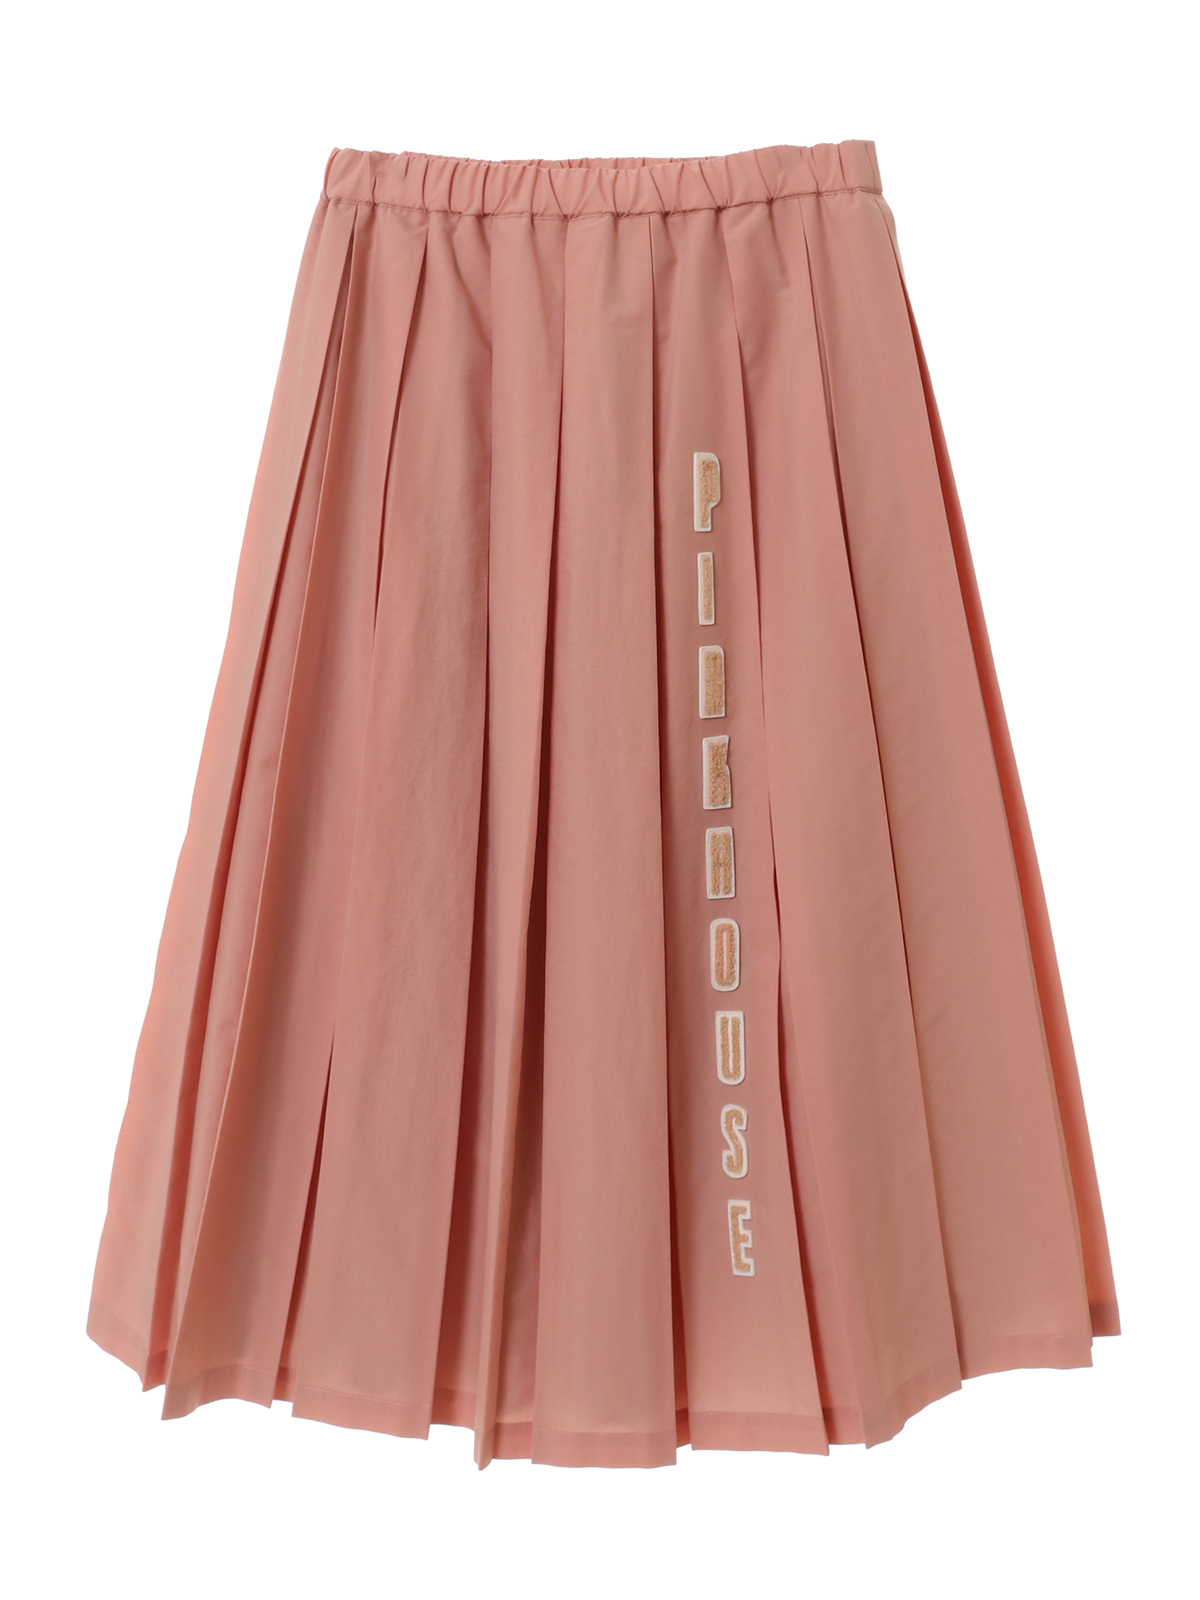 ピンクハウス、ツリーの刺繍可愛いスカートウエスト60